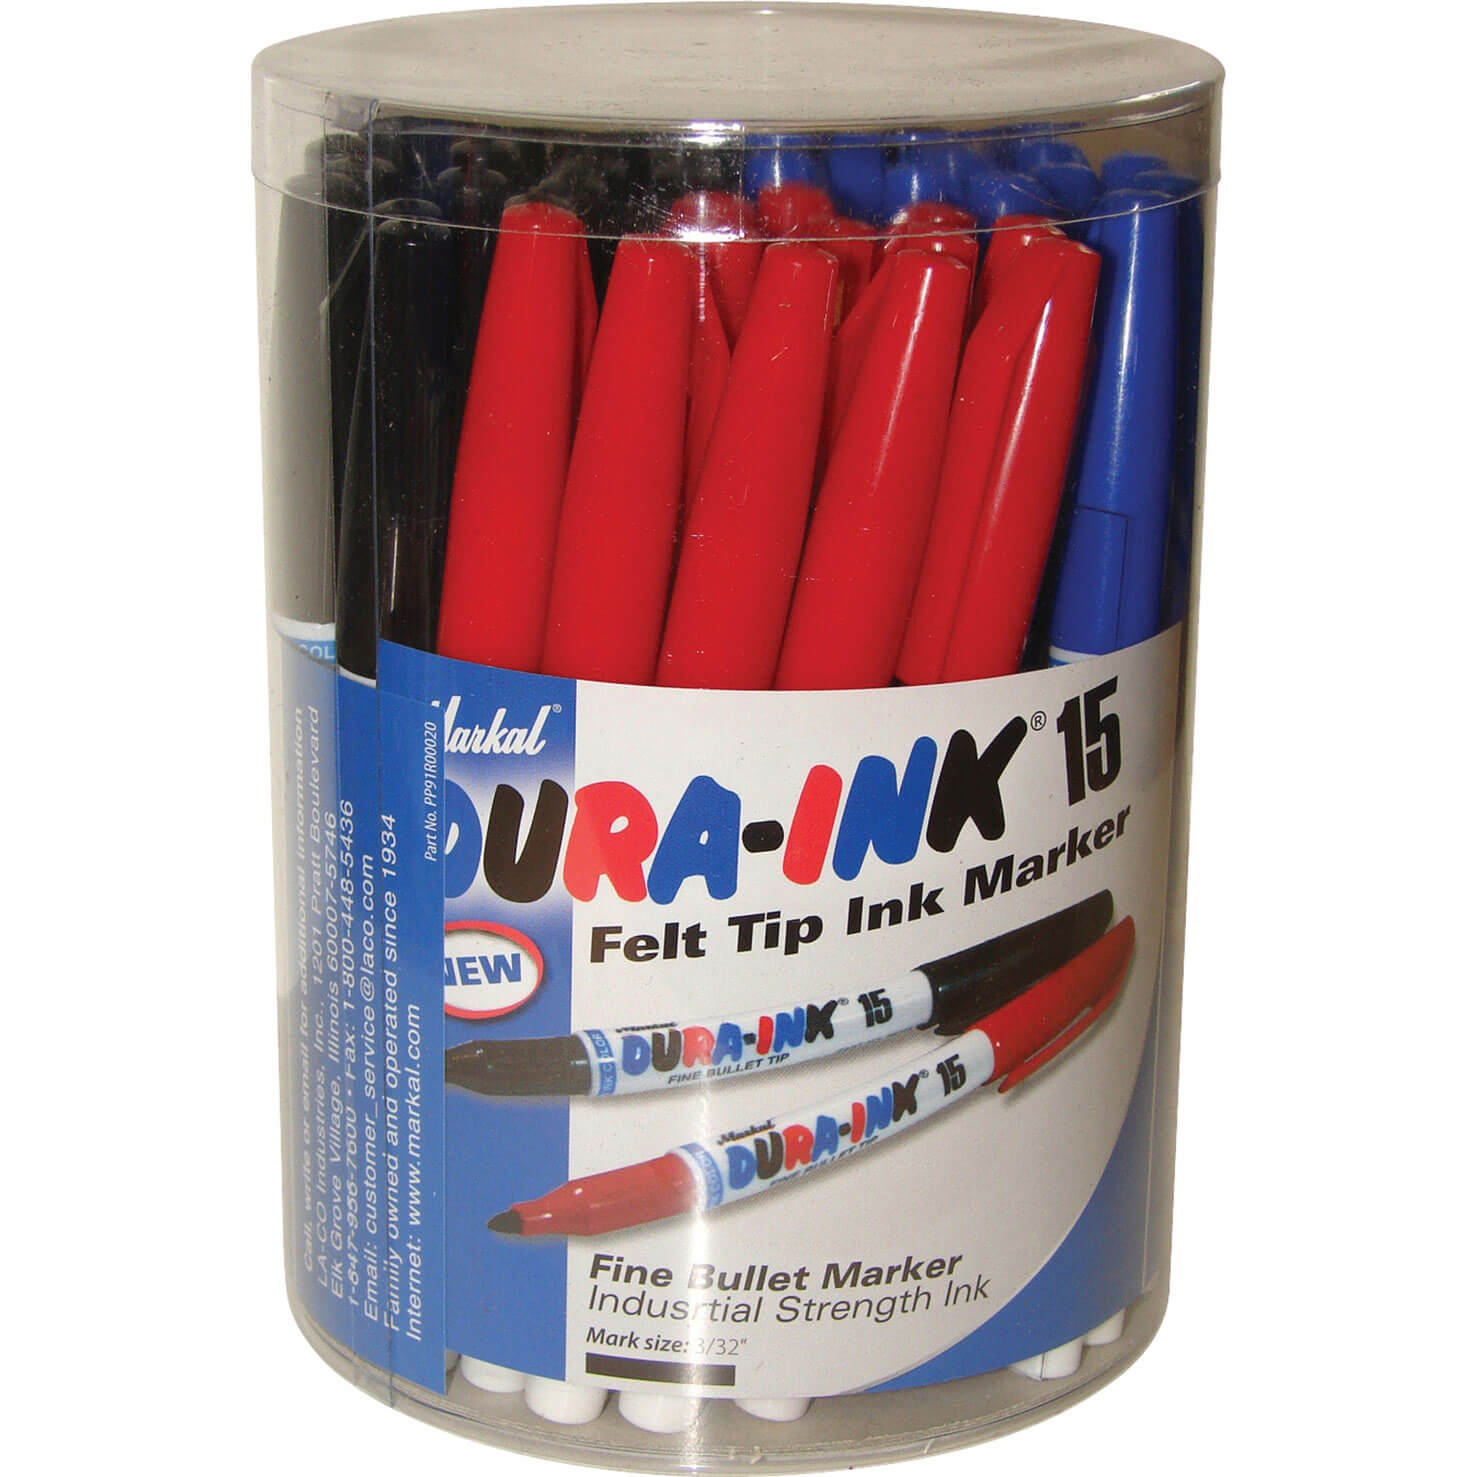 Image of Markal Dura Ink 15 Fine Bullet Tip Permanent Marker Pen Tub Assorted Pack of 48